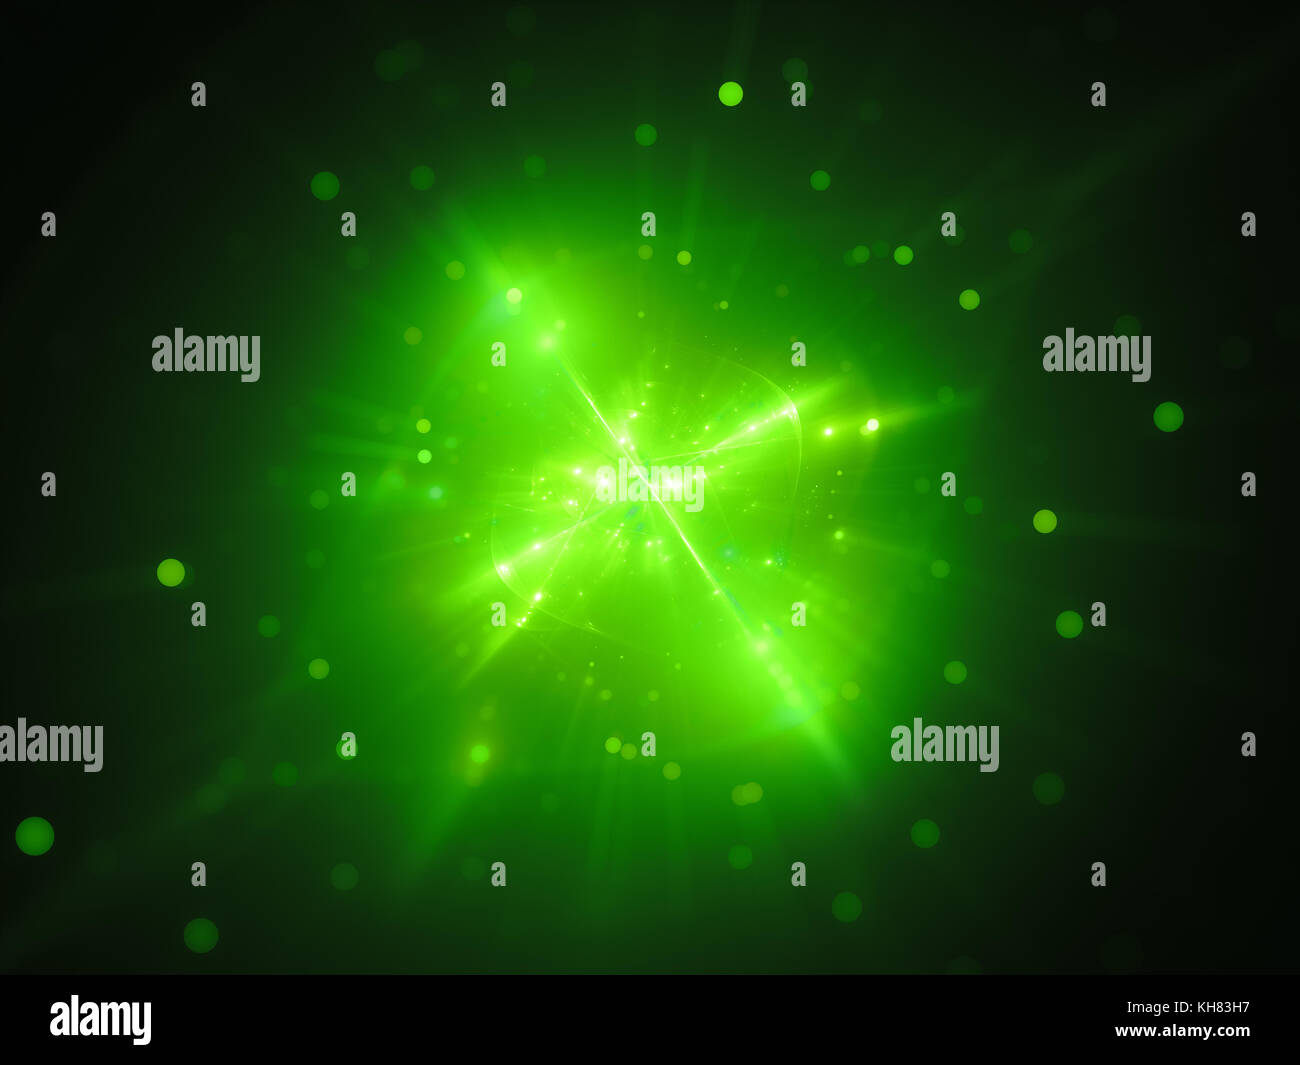 Grün leuchtende interstellaren Objekt im Raum, außerirdischen Lebens bilden, computer-generierte Zusammenfassung Hintergrund, 3D-Rendering Stockfoto